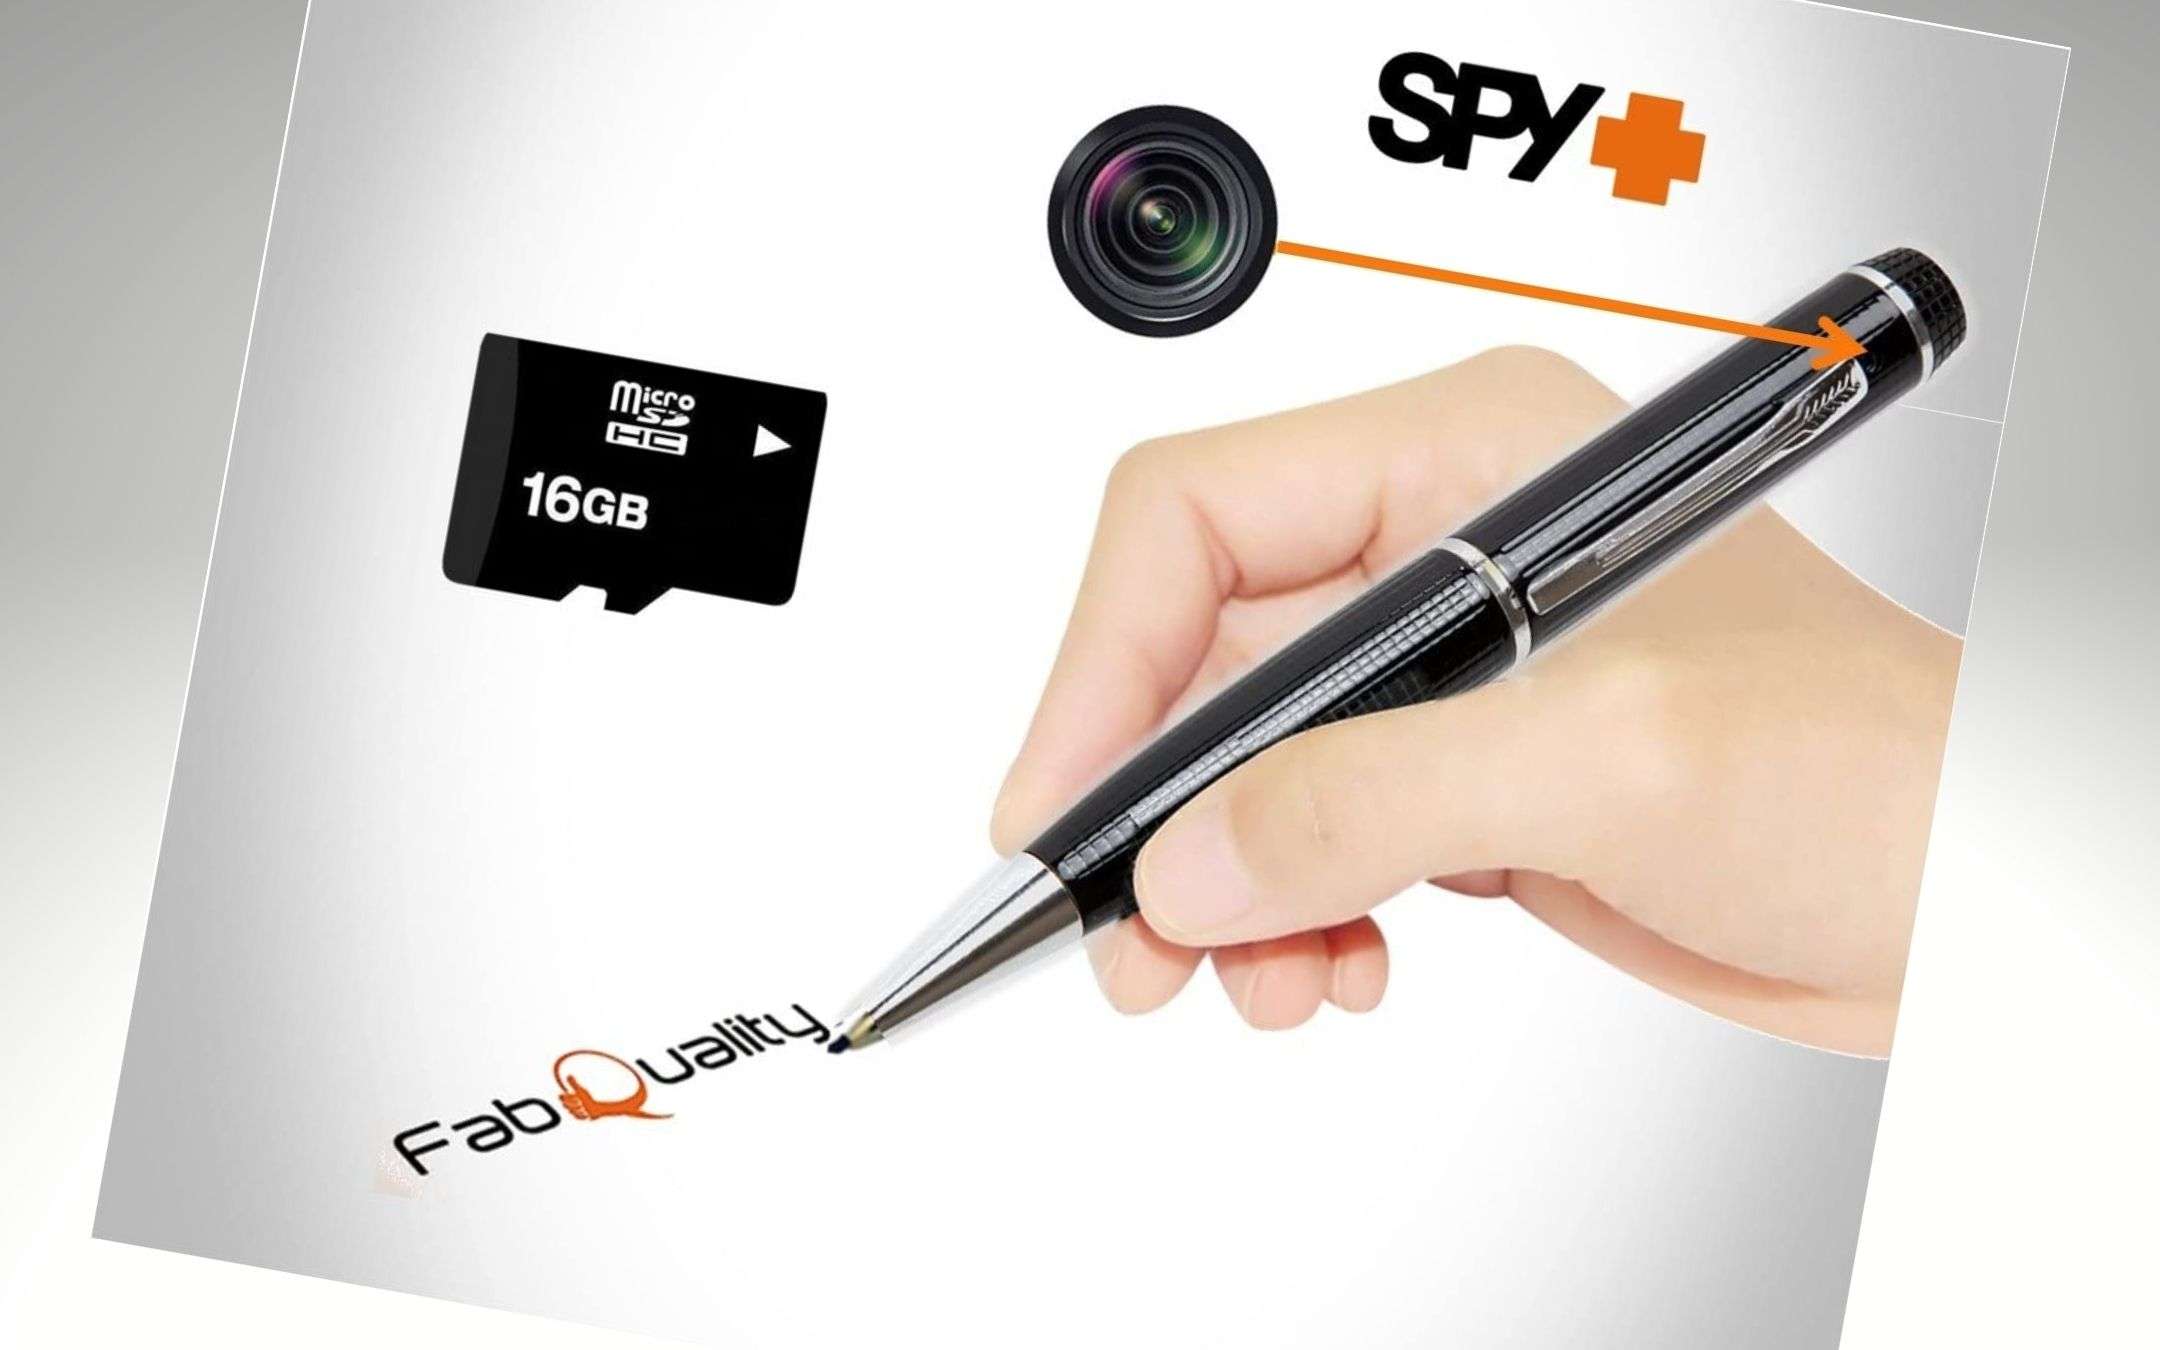 Sembra una penna, ma è una videocamera spia ASSURDA (33€)